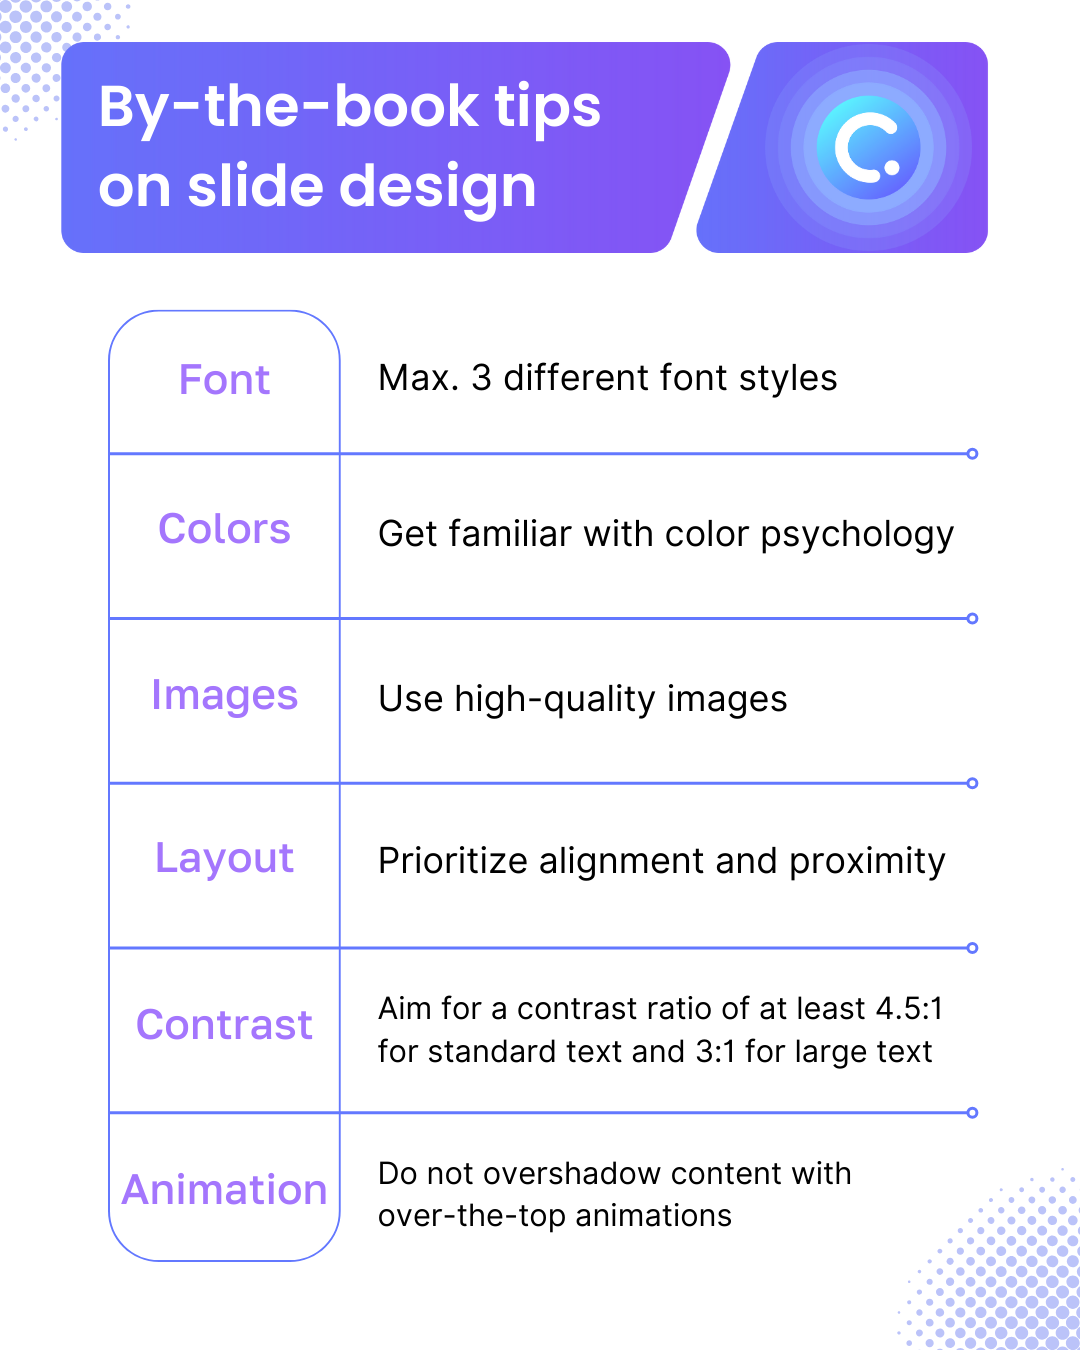 PowerPoint Slide design tips